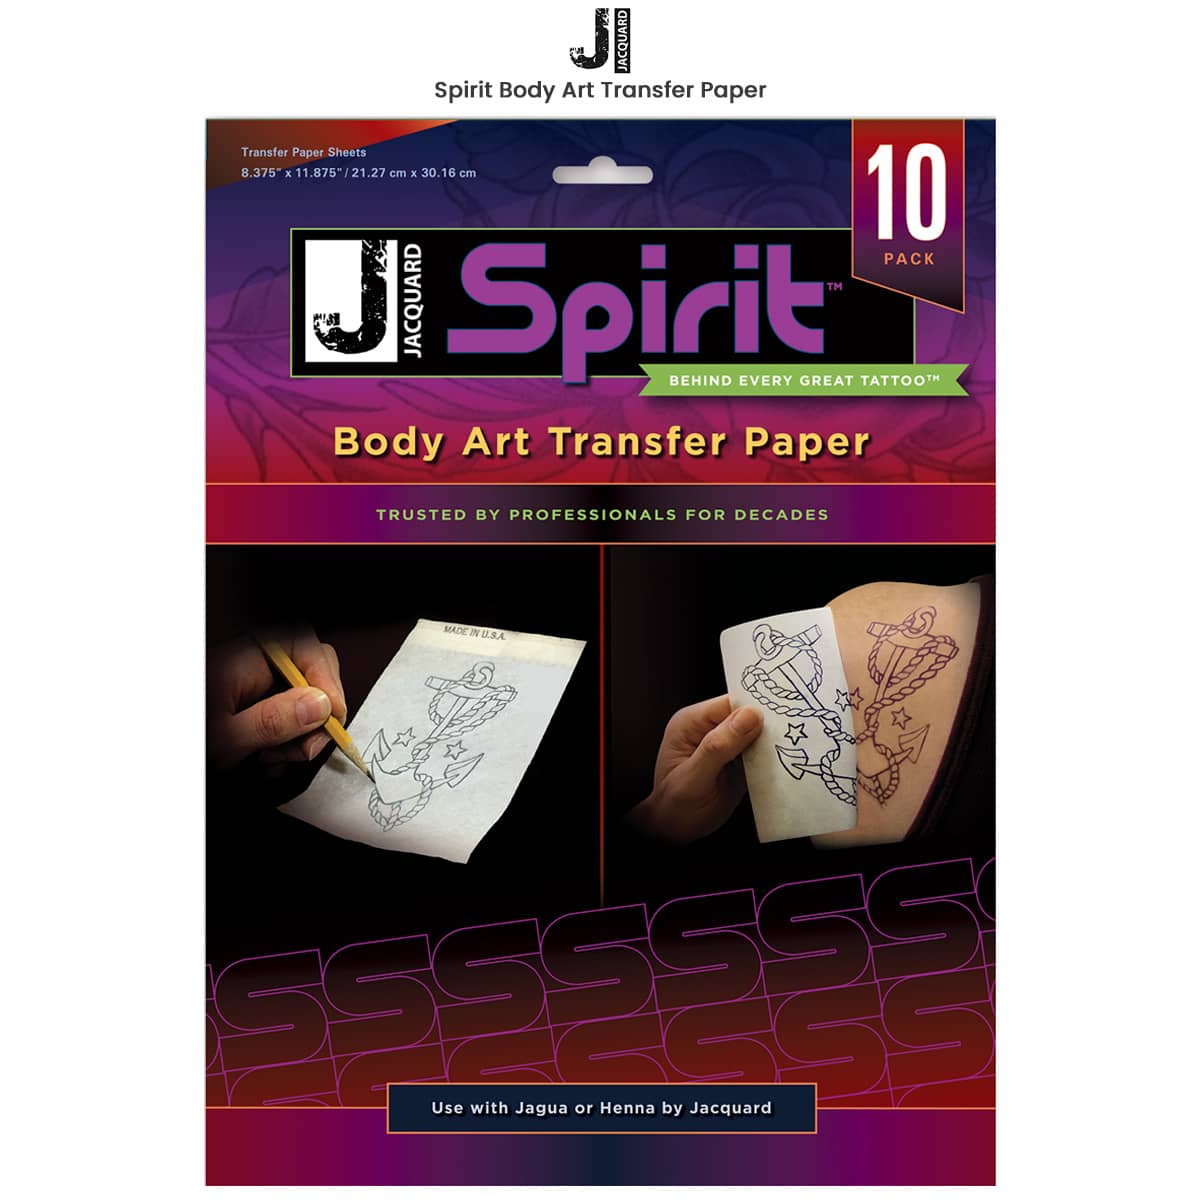 Creative Mark 9x13 Graphite Transfer Paper, 4 Sheets